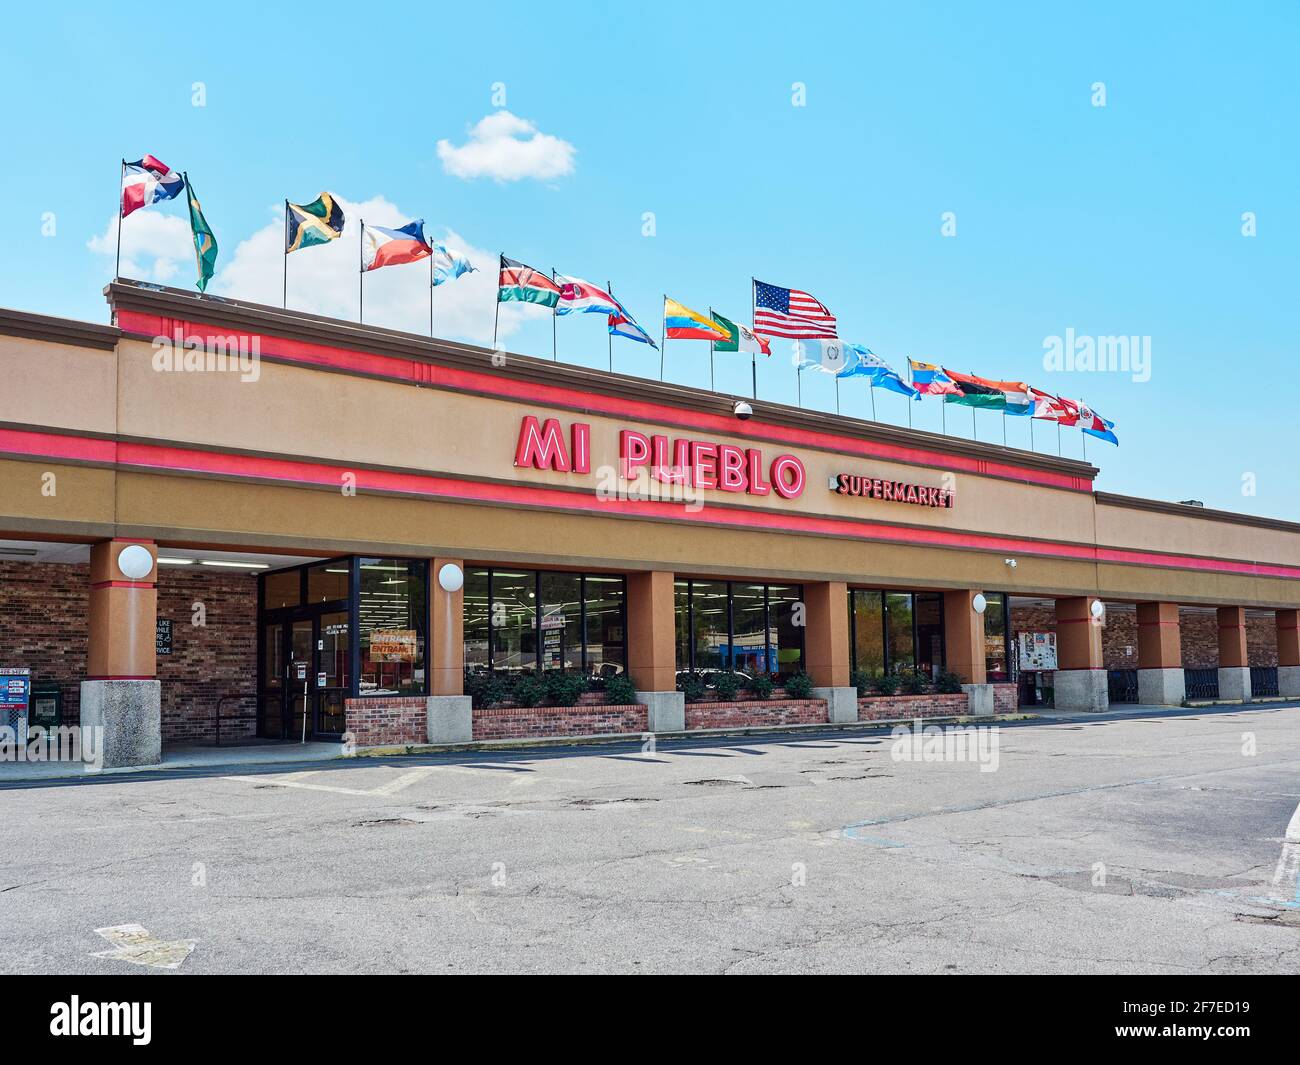 Mi Pueblo Supermarket ist ein lateinamerikanischer oder lateinamerikanischer Lebensmittelmarkt in Pelham Alabama, USA. Stockfoto